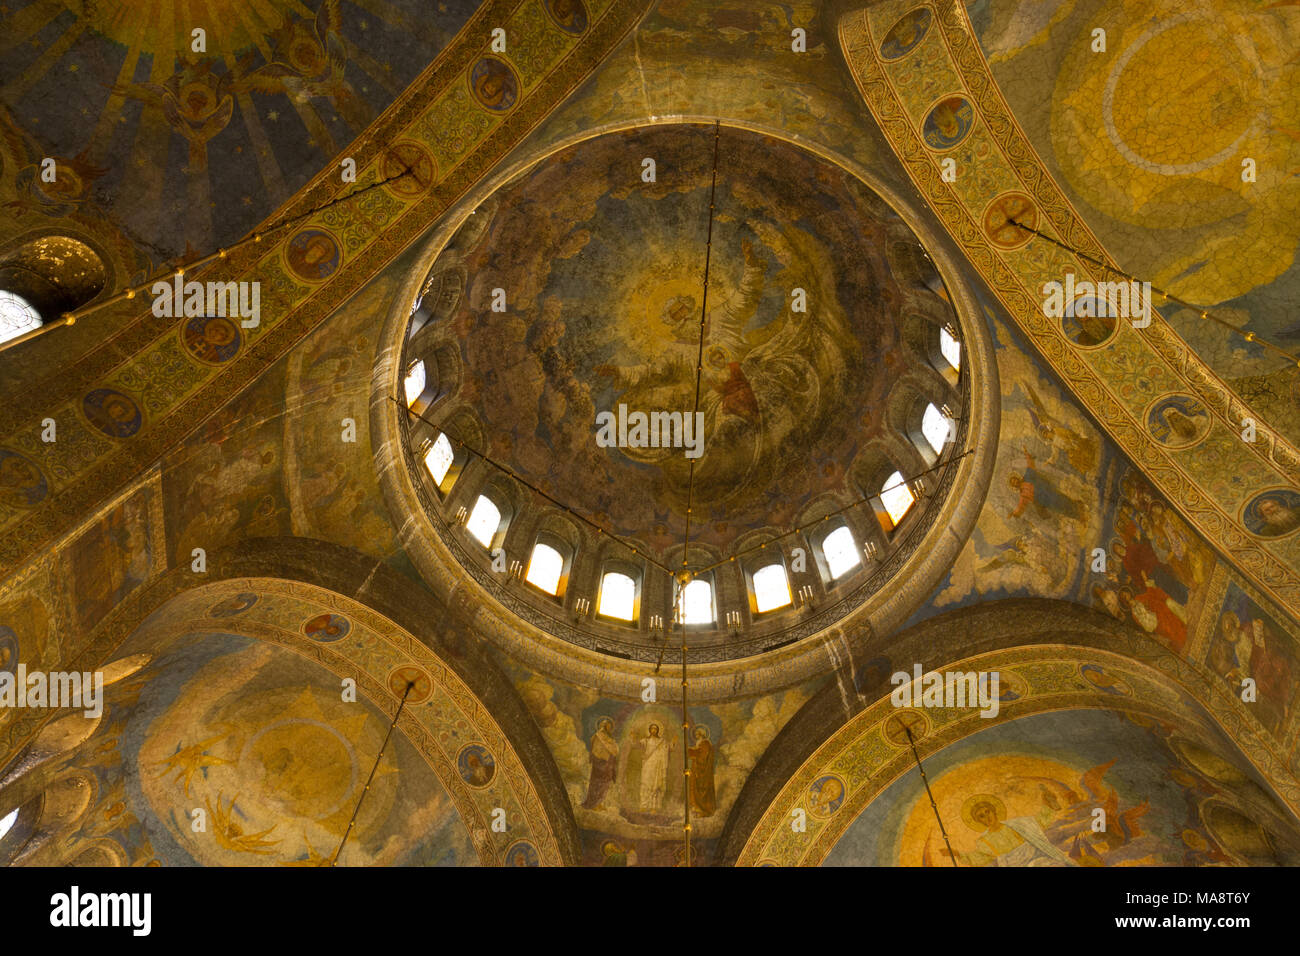 À l'intérieur de la coupole centrale à l'intérieur de la Cathédrale Saint Alexandar Nevski à Sofia, Bulgarie. Banque D'Images